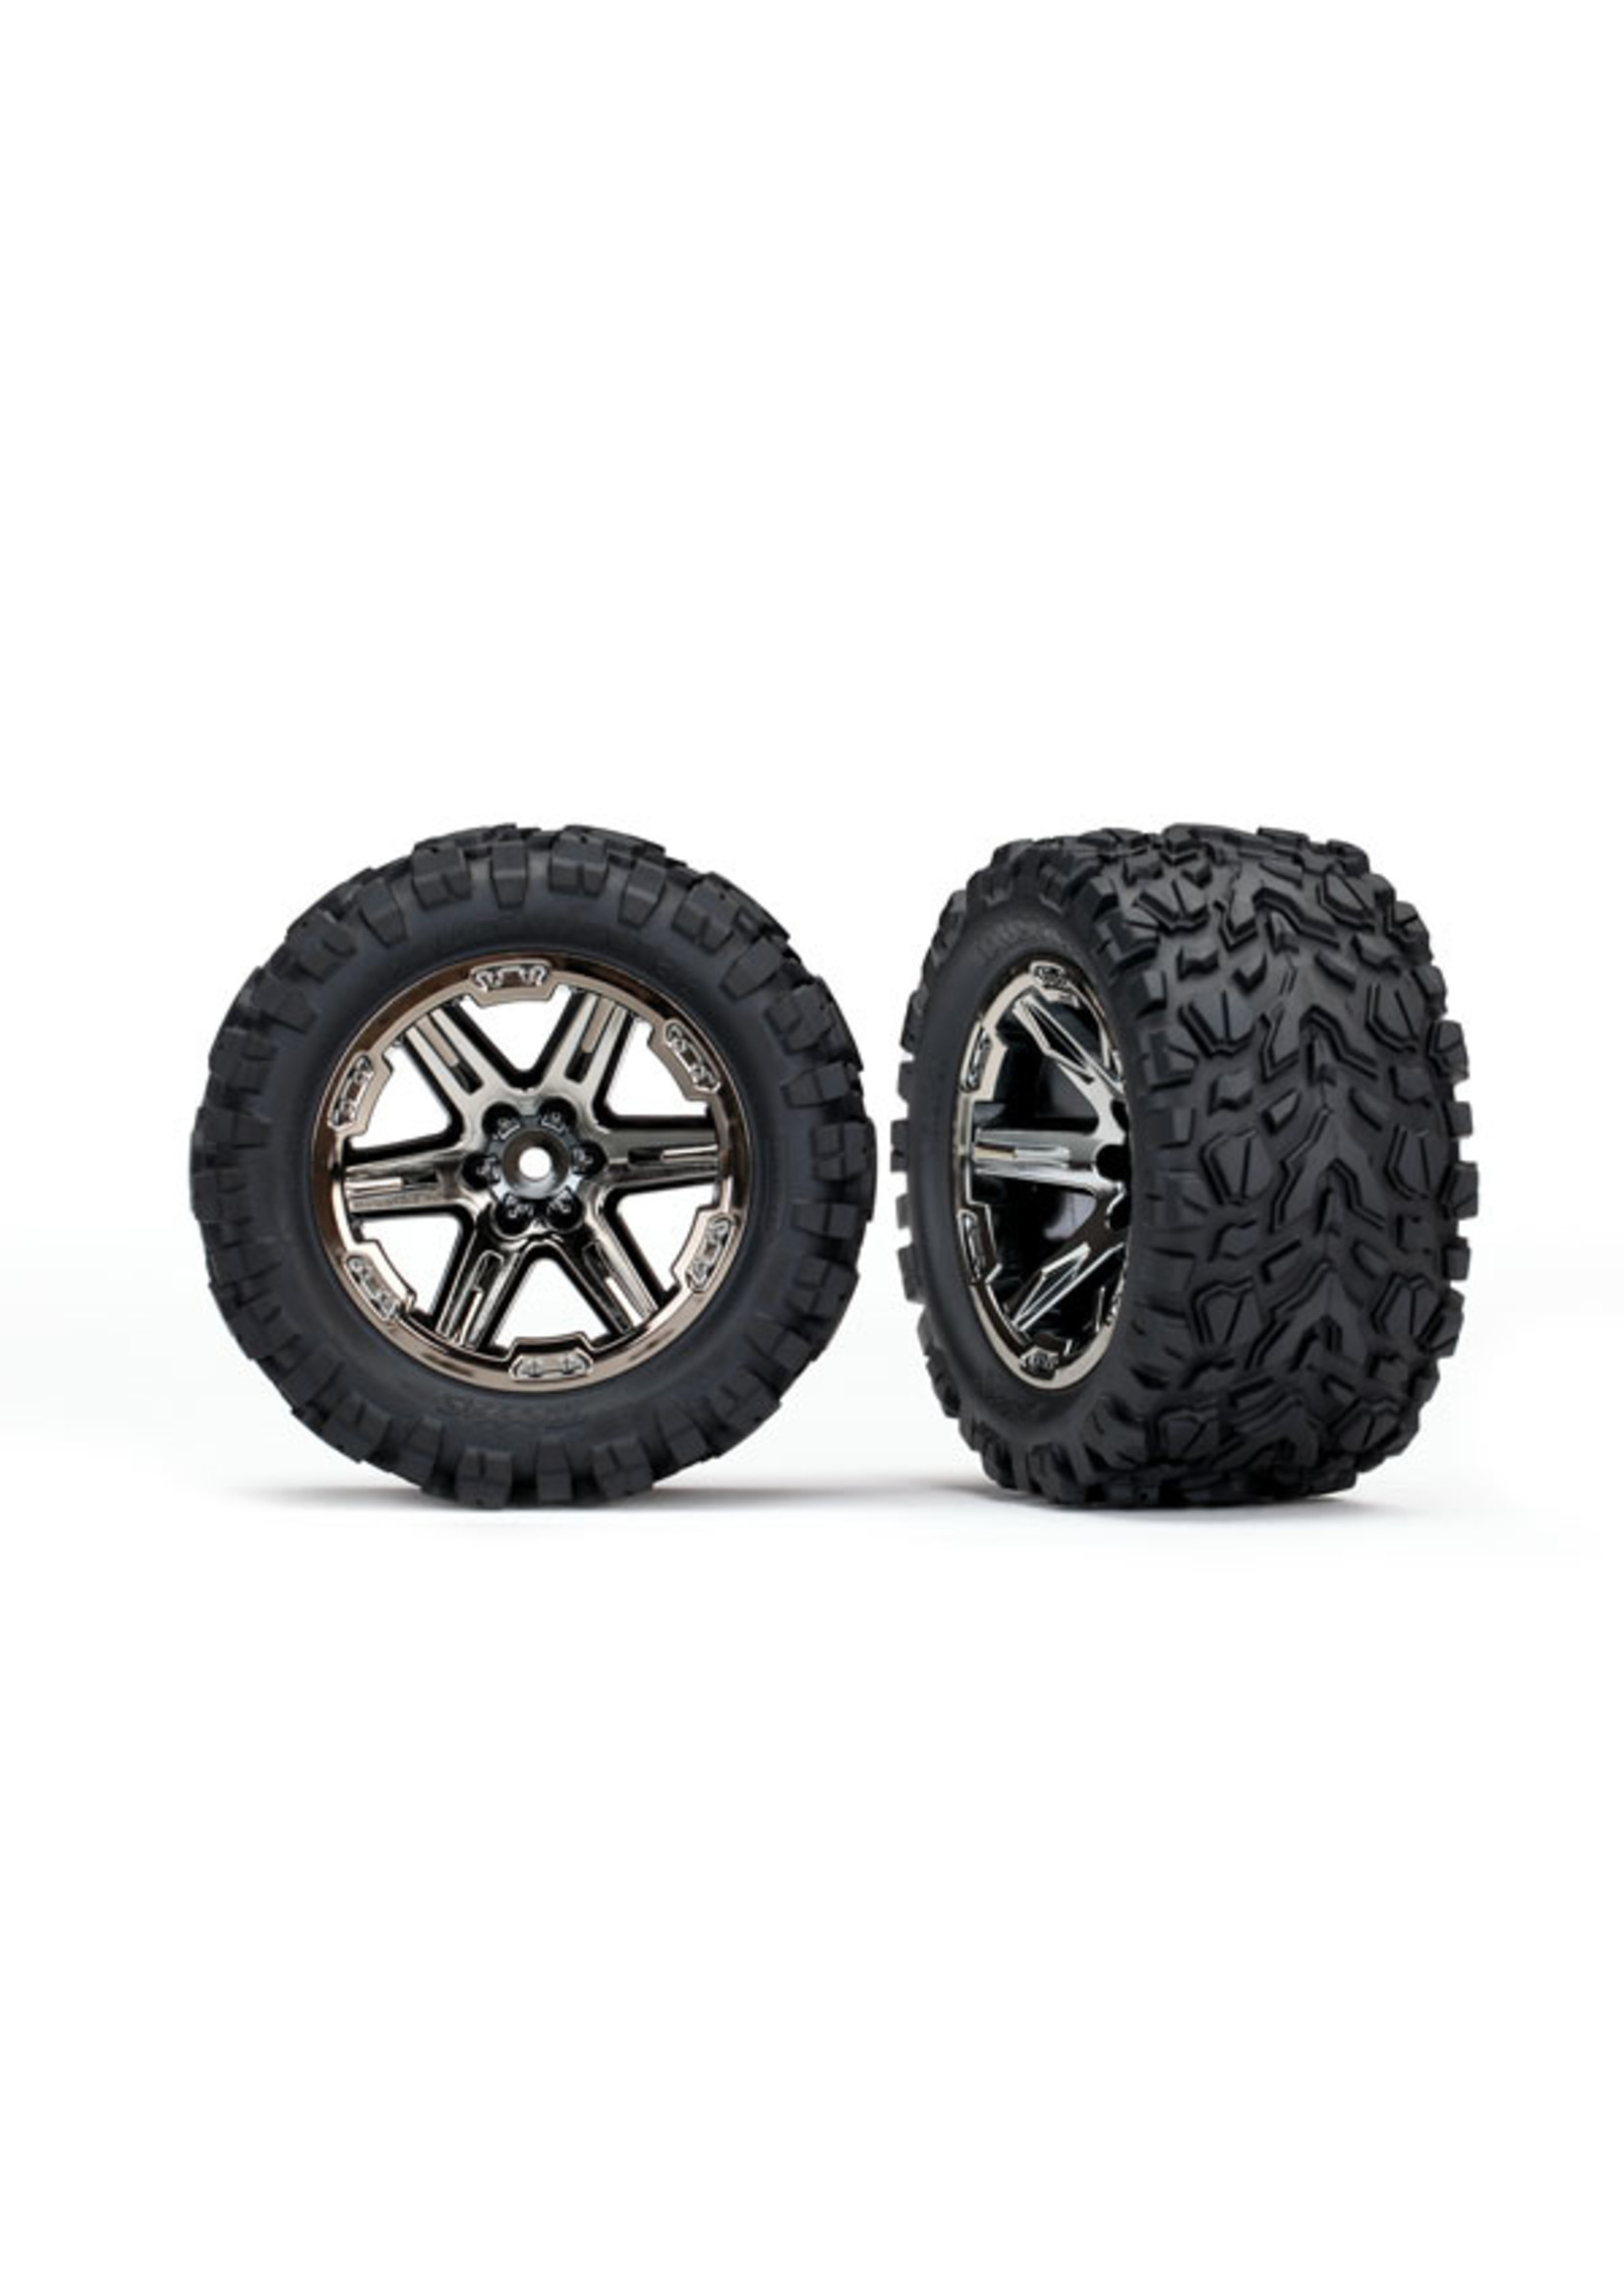 Traxxas 6773X - RXT Black Chrome Wheels / Talon Extreme Tires